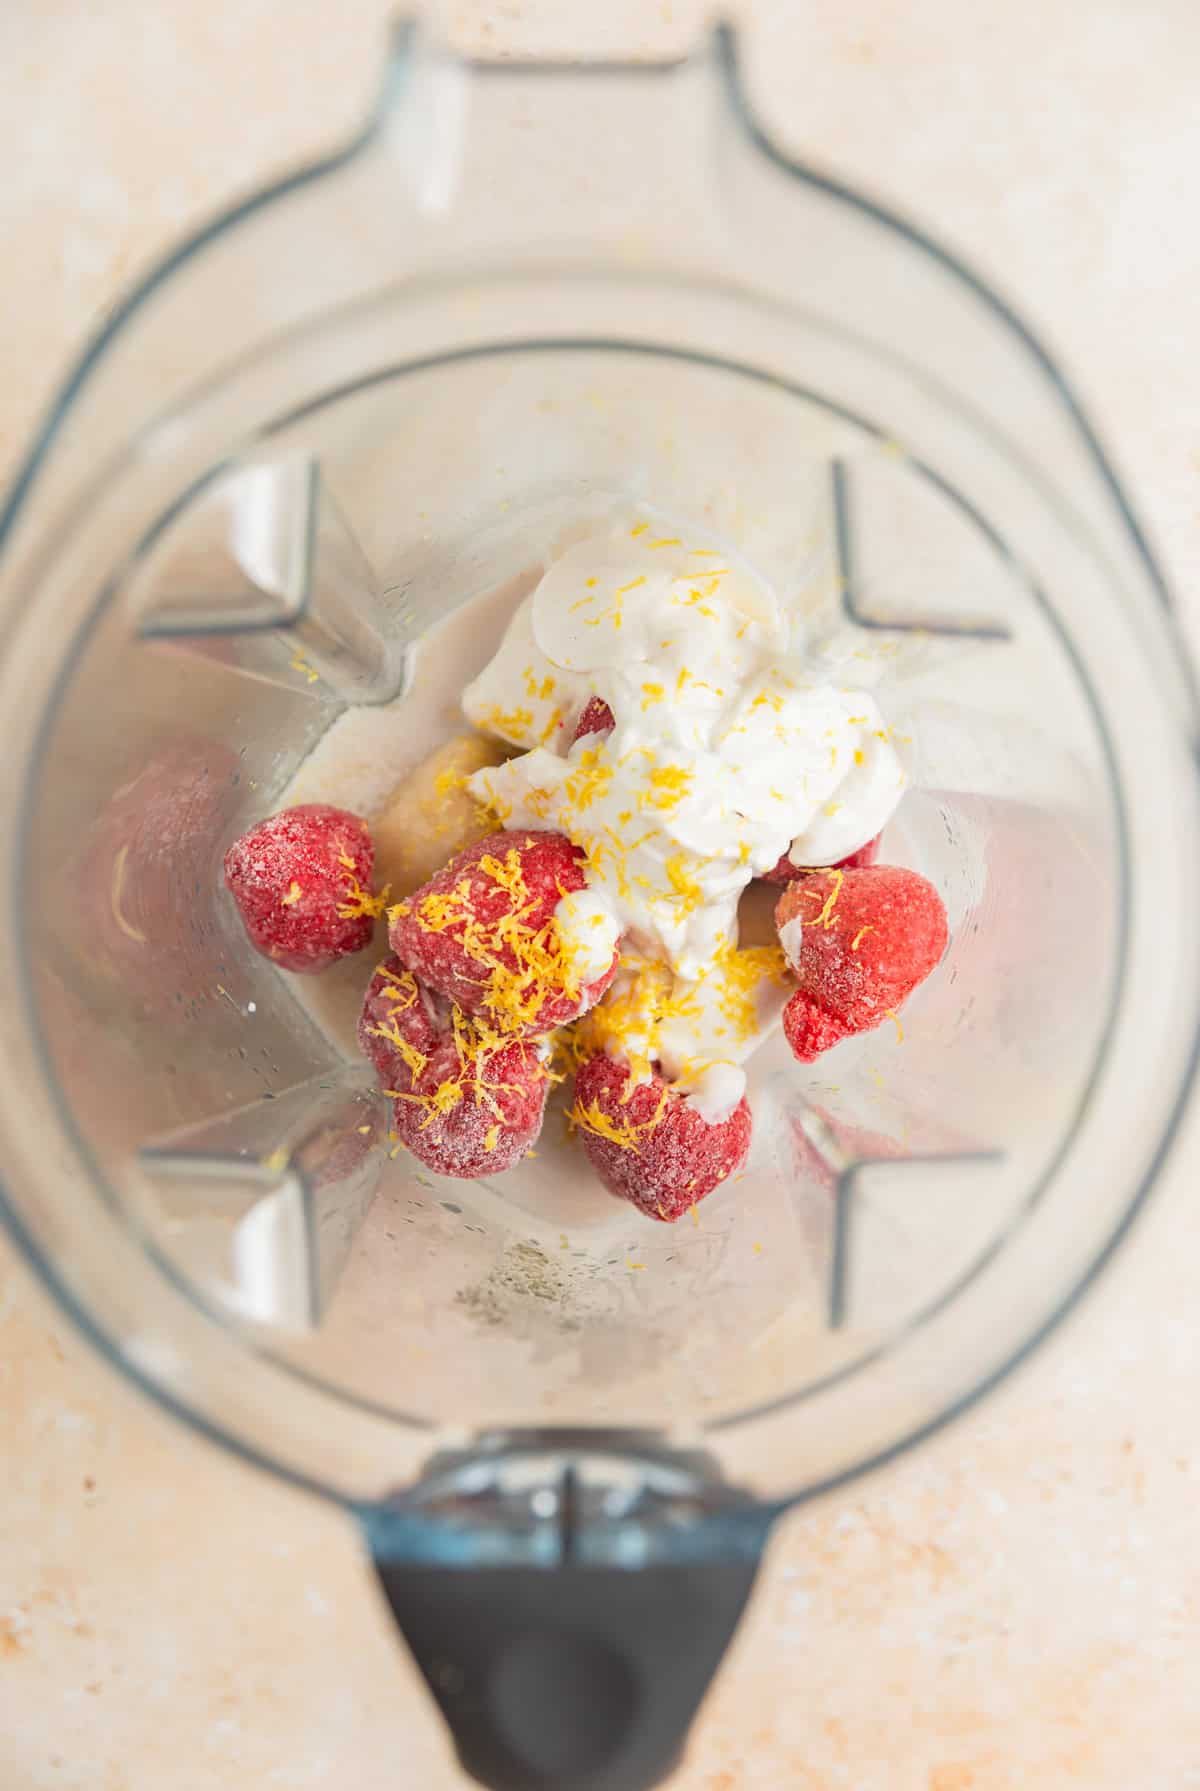 Frozen strawberries, yogurt, lemon zest, frozen banana and other ingredients in blender.